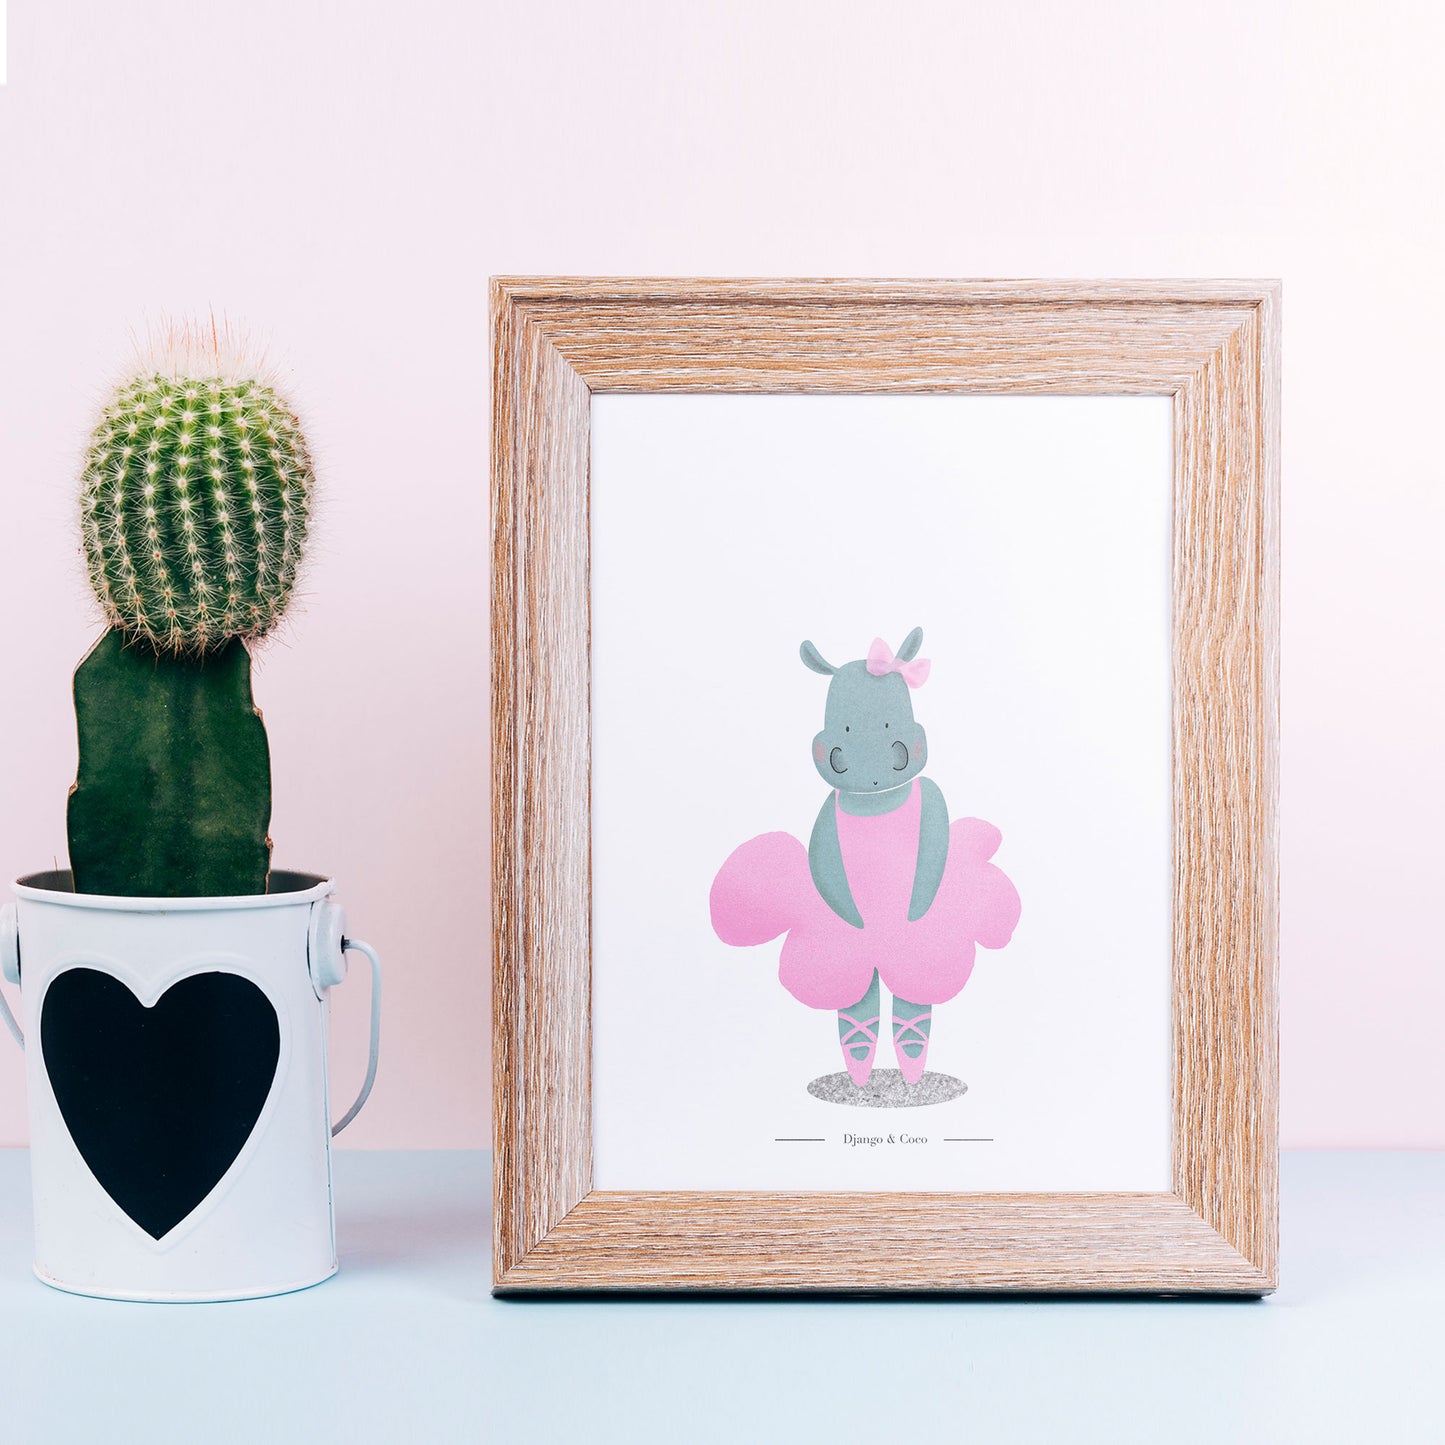 hippopotamus ballerina in a frame and a cactus